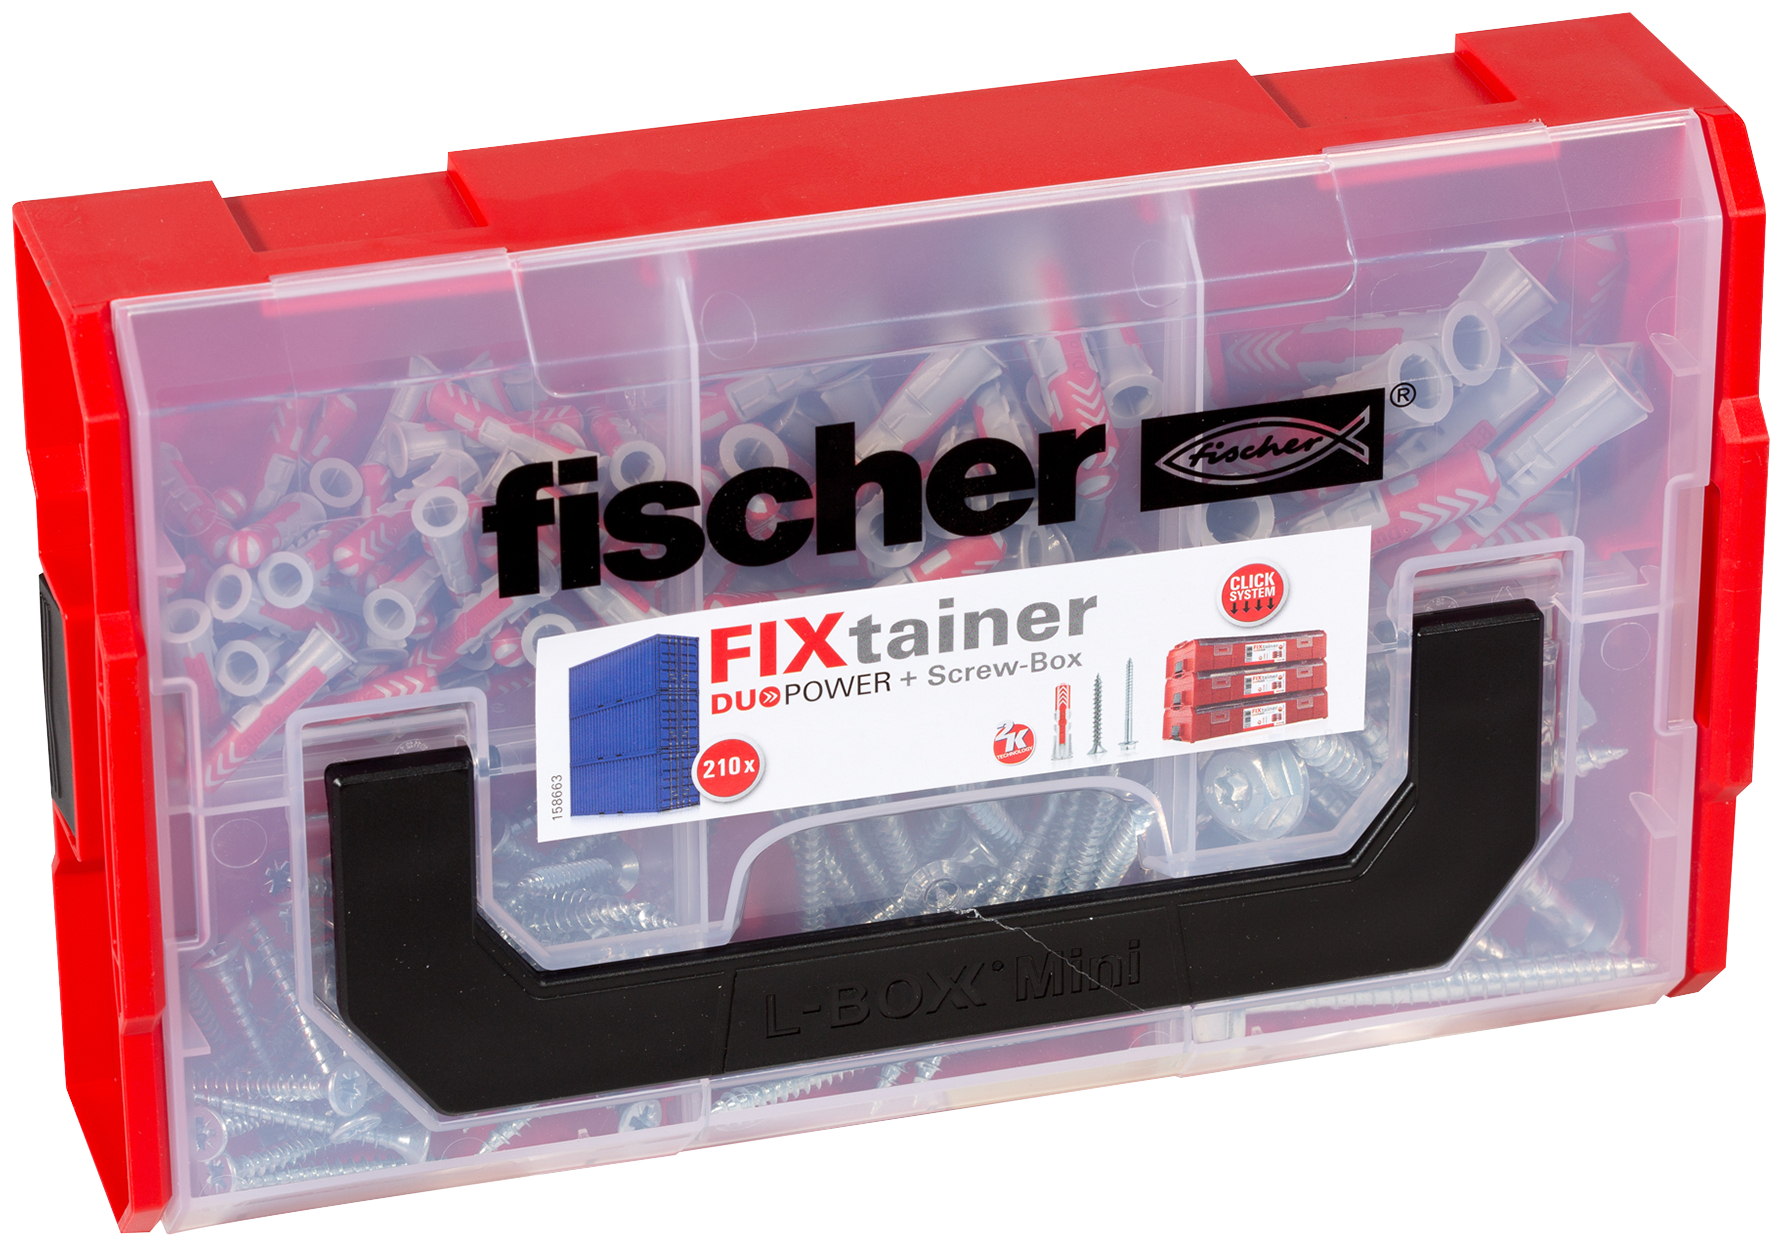 fischer FIXtainer DUOPOWER Con vite - Valigetta tasselli (105 Pz.) Pratiche soluzioni di fissaggio per le pi comuni applicazioni nel fischer FixTainer impilabile e di alta qualit.